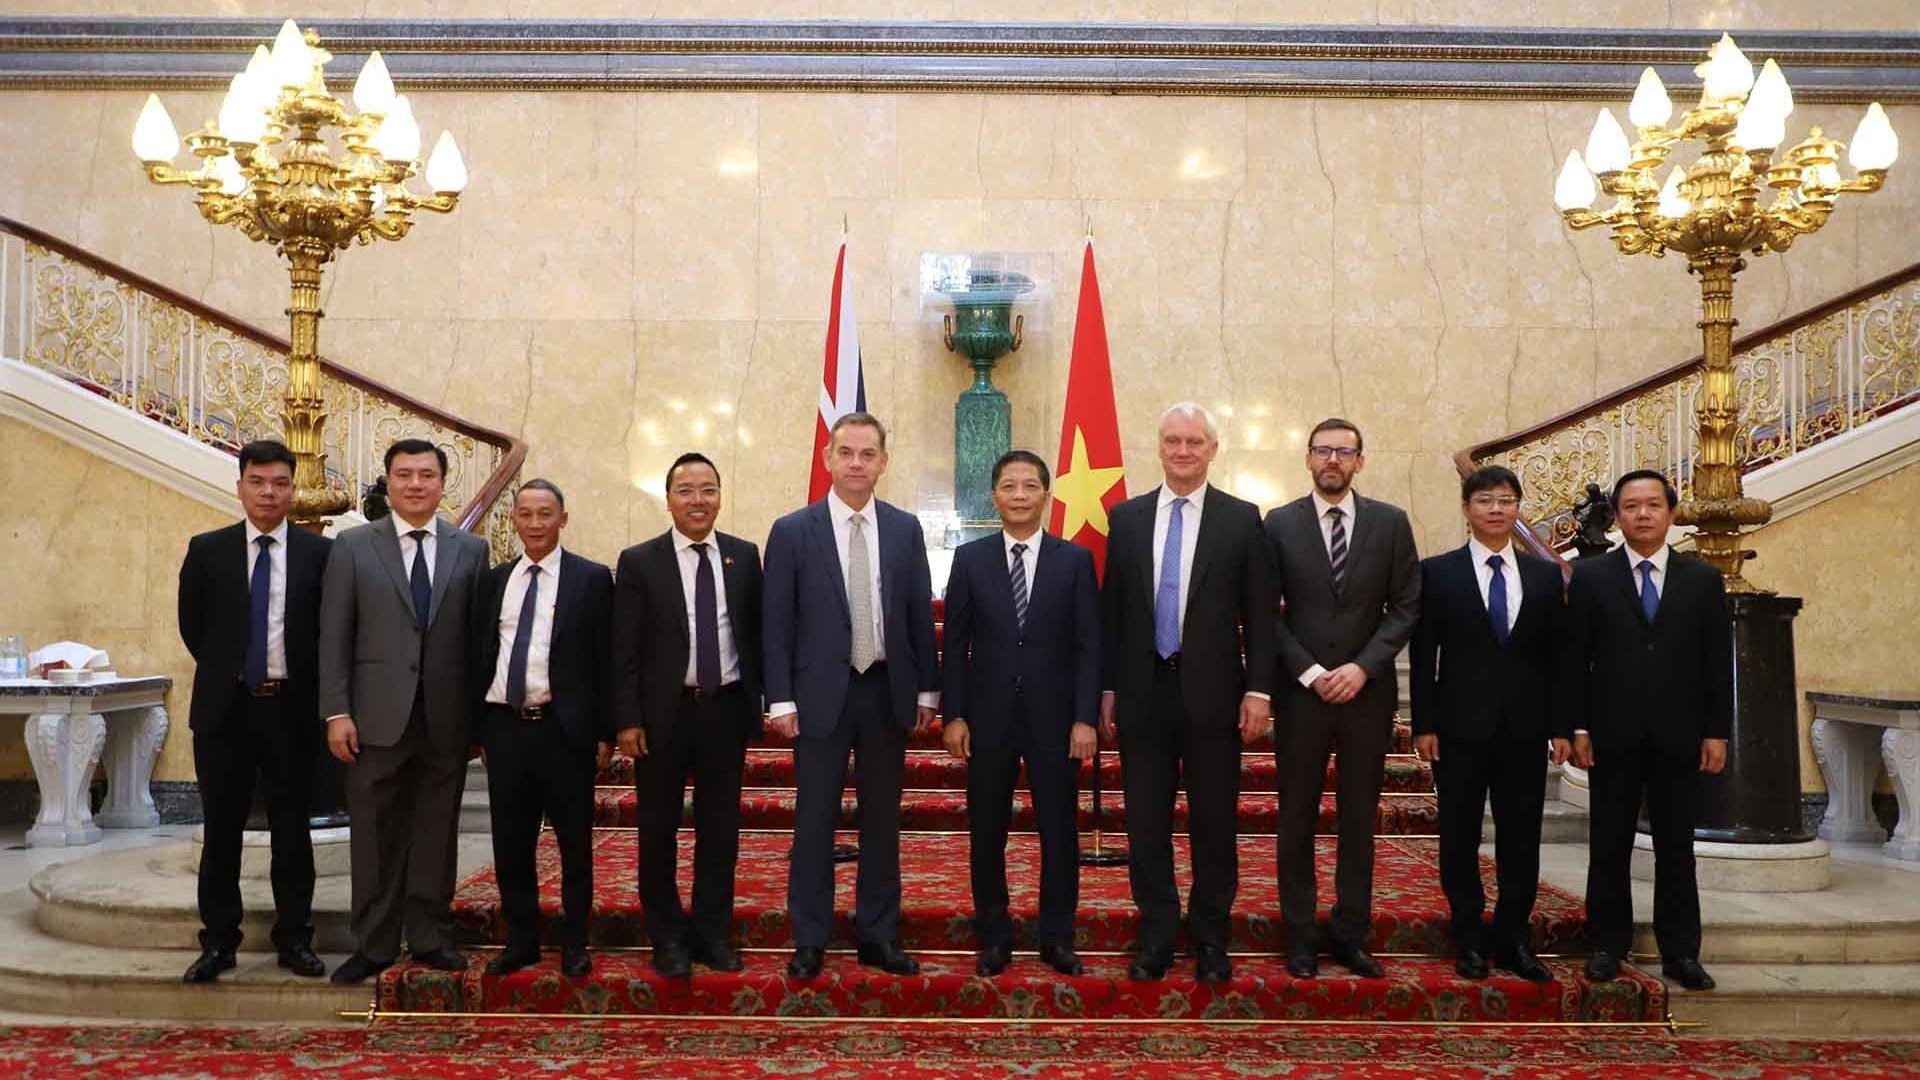 Đưa quan hệ Đối tác chiến lược Việt Nam-Anh lên tầm cao mới